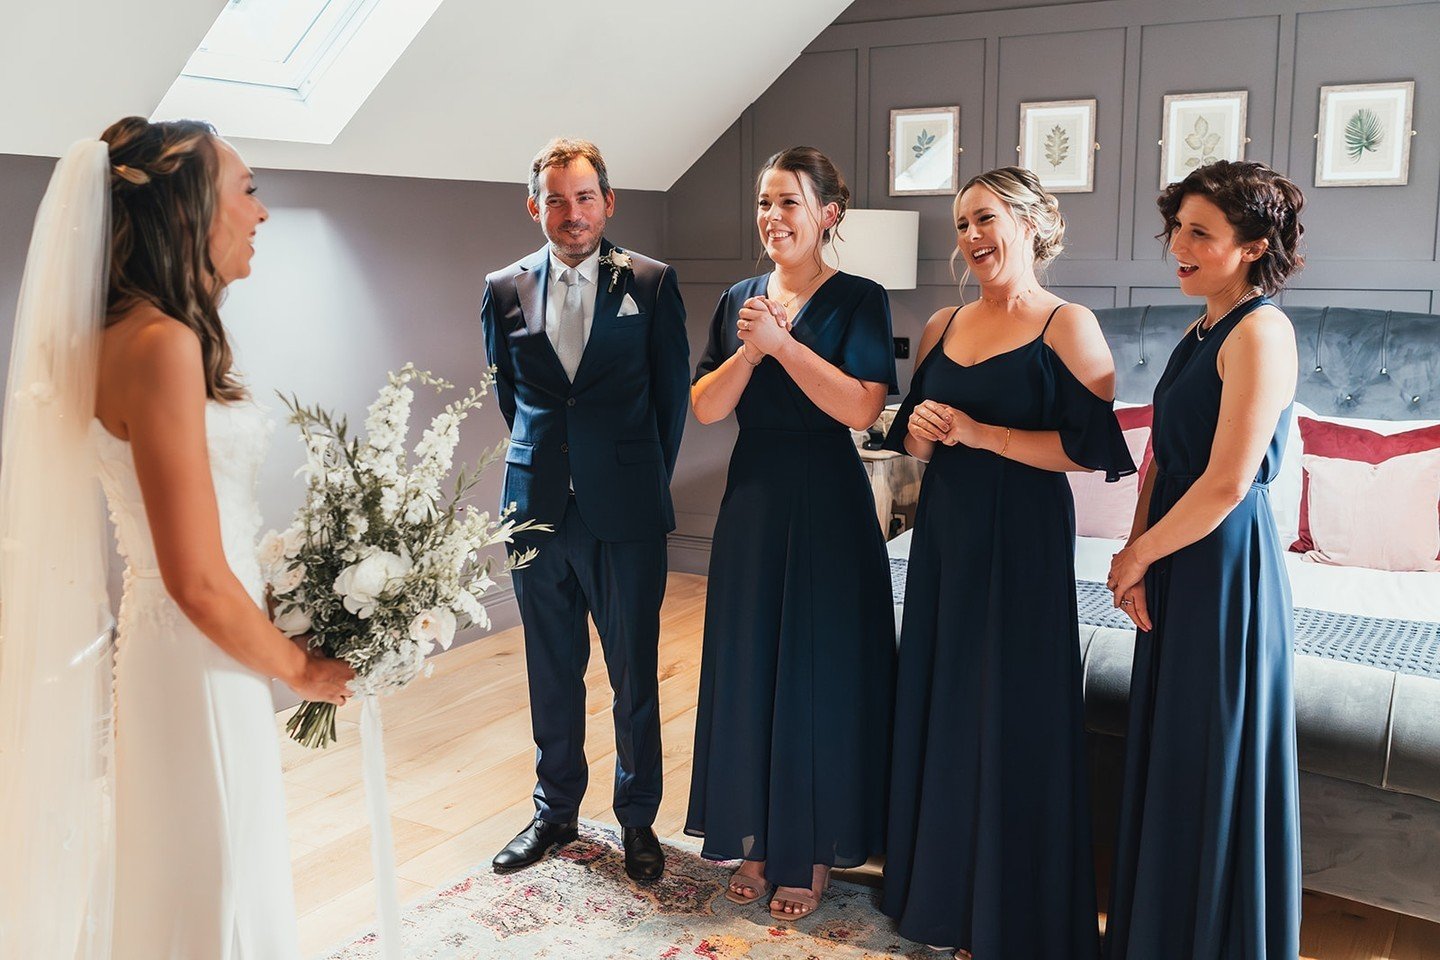 The reveal moment.

Images by @suzyelizabethphotography

#realwedding #cotswold #cotswoldwedding #weddingideas #weddingceremony #ceremony #ido #ourwedding